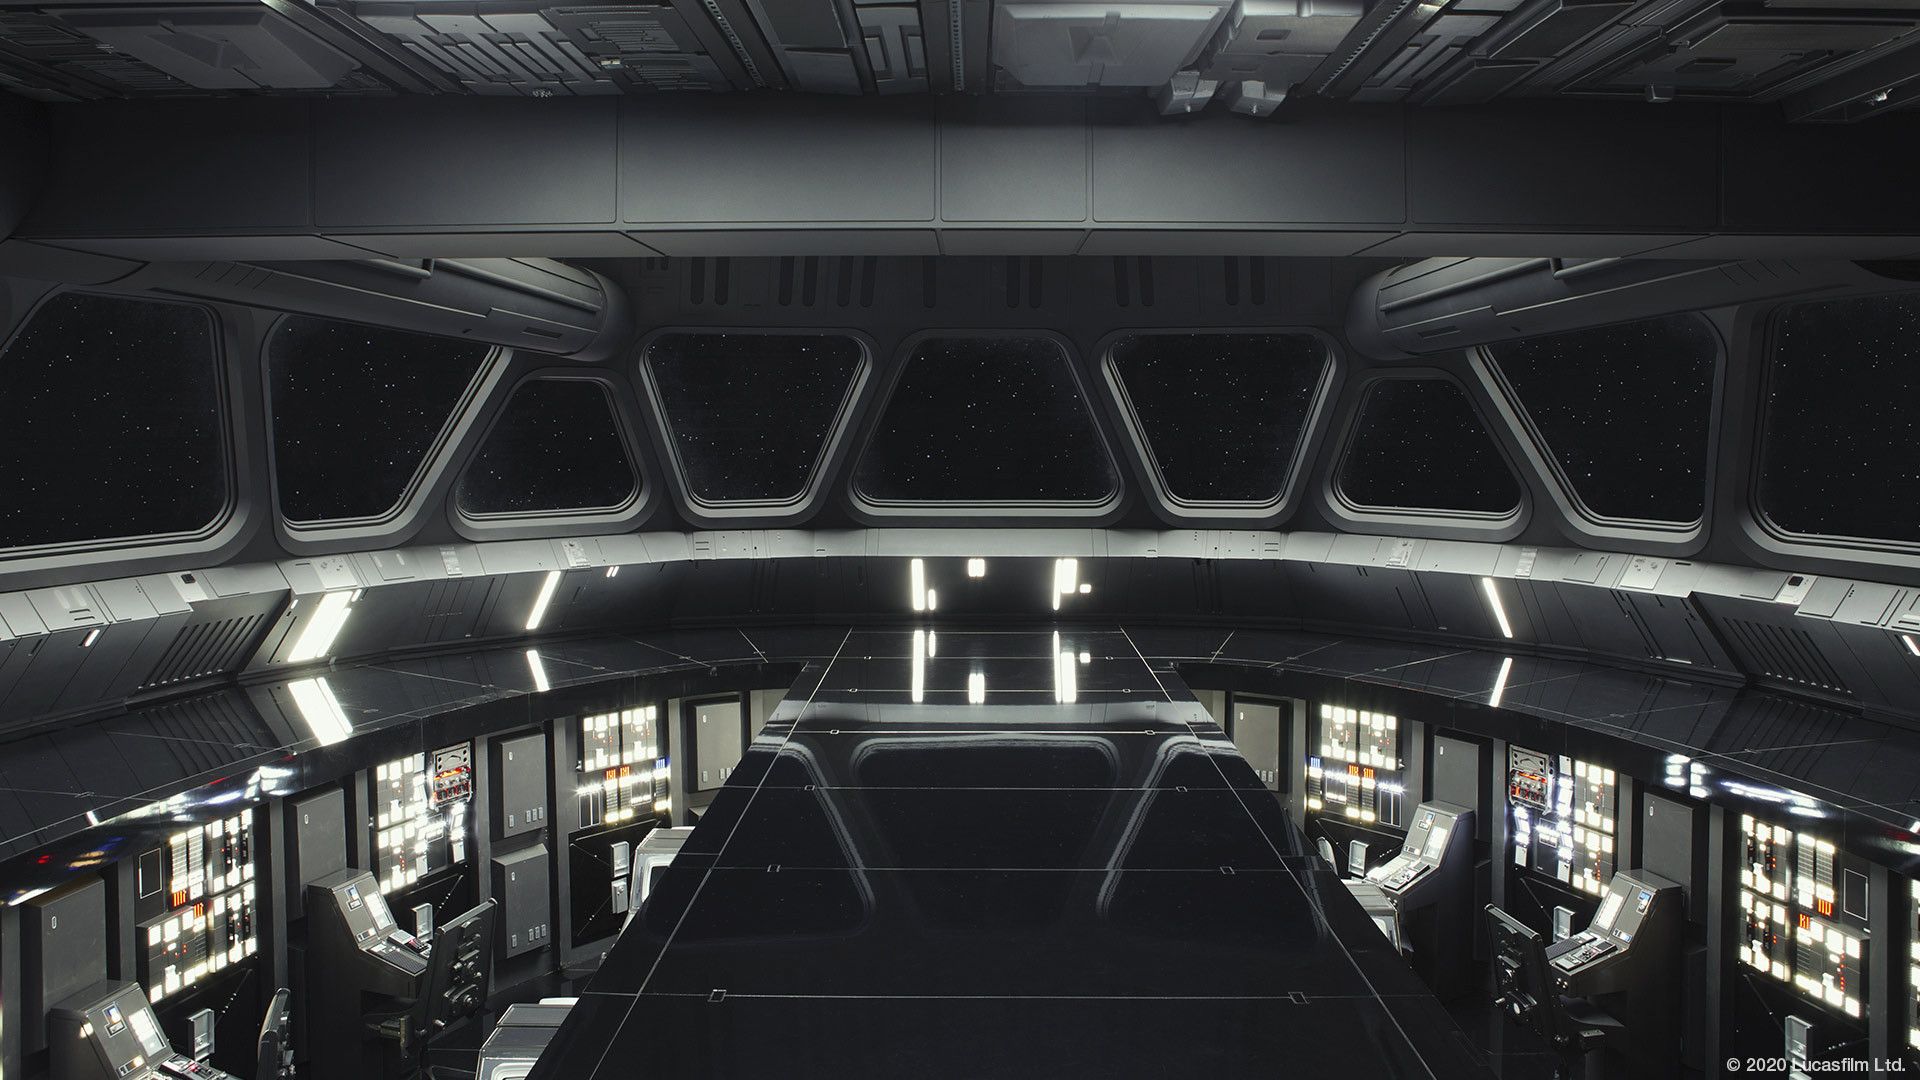 Best Star Wars Zoom Background for Virtual Meetings of Geek